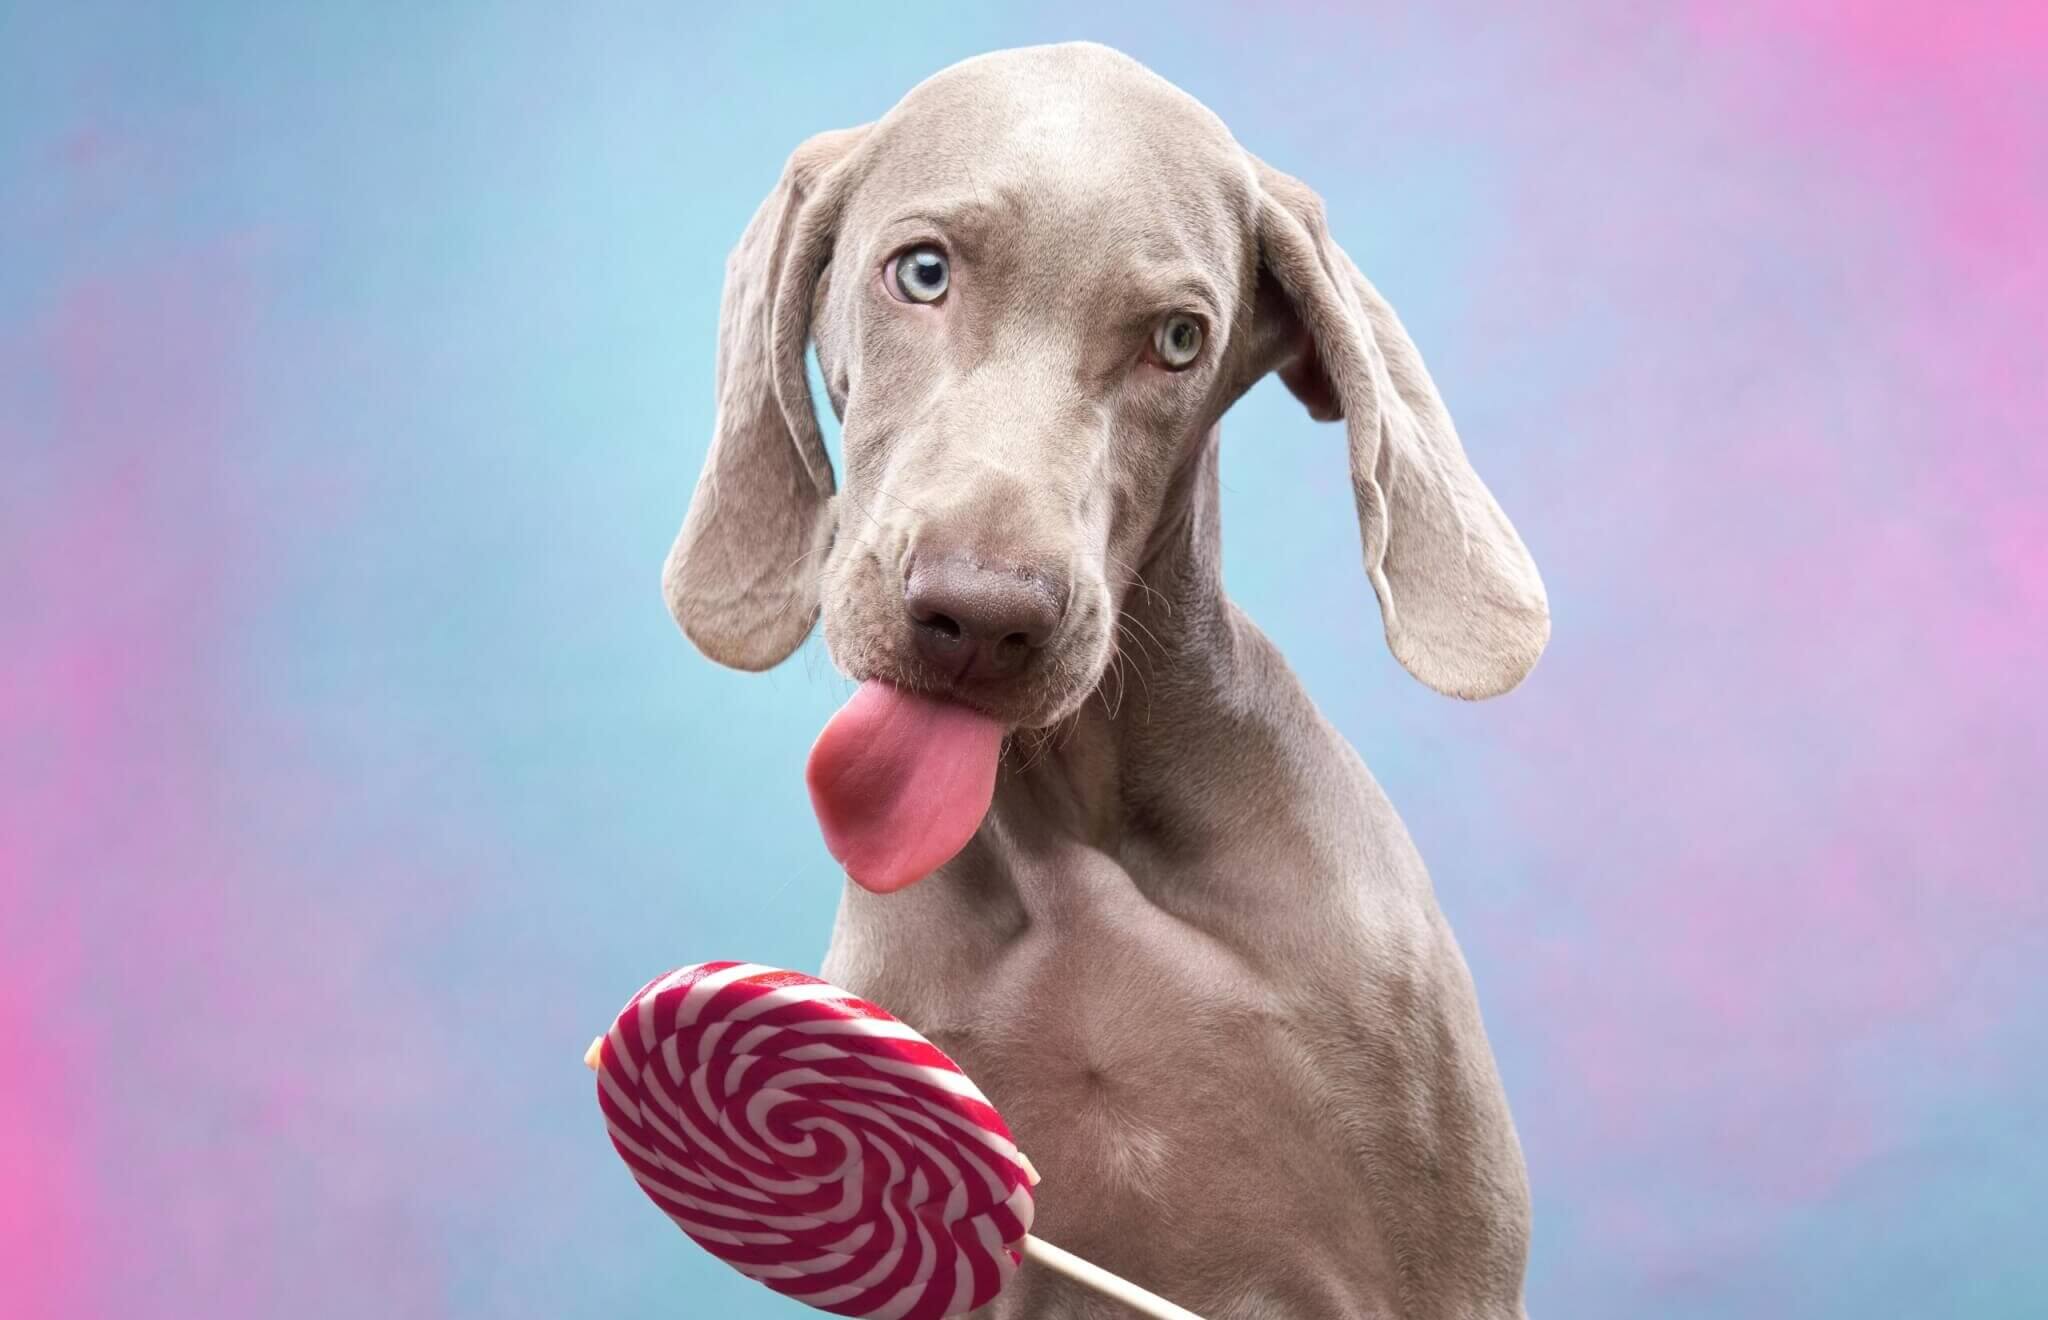 A Weimaraner licking a lollipop